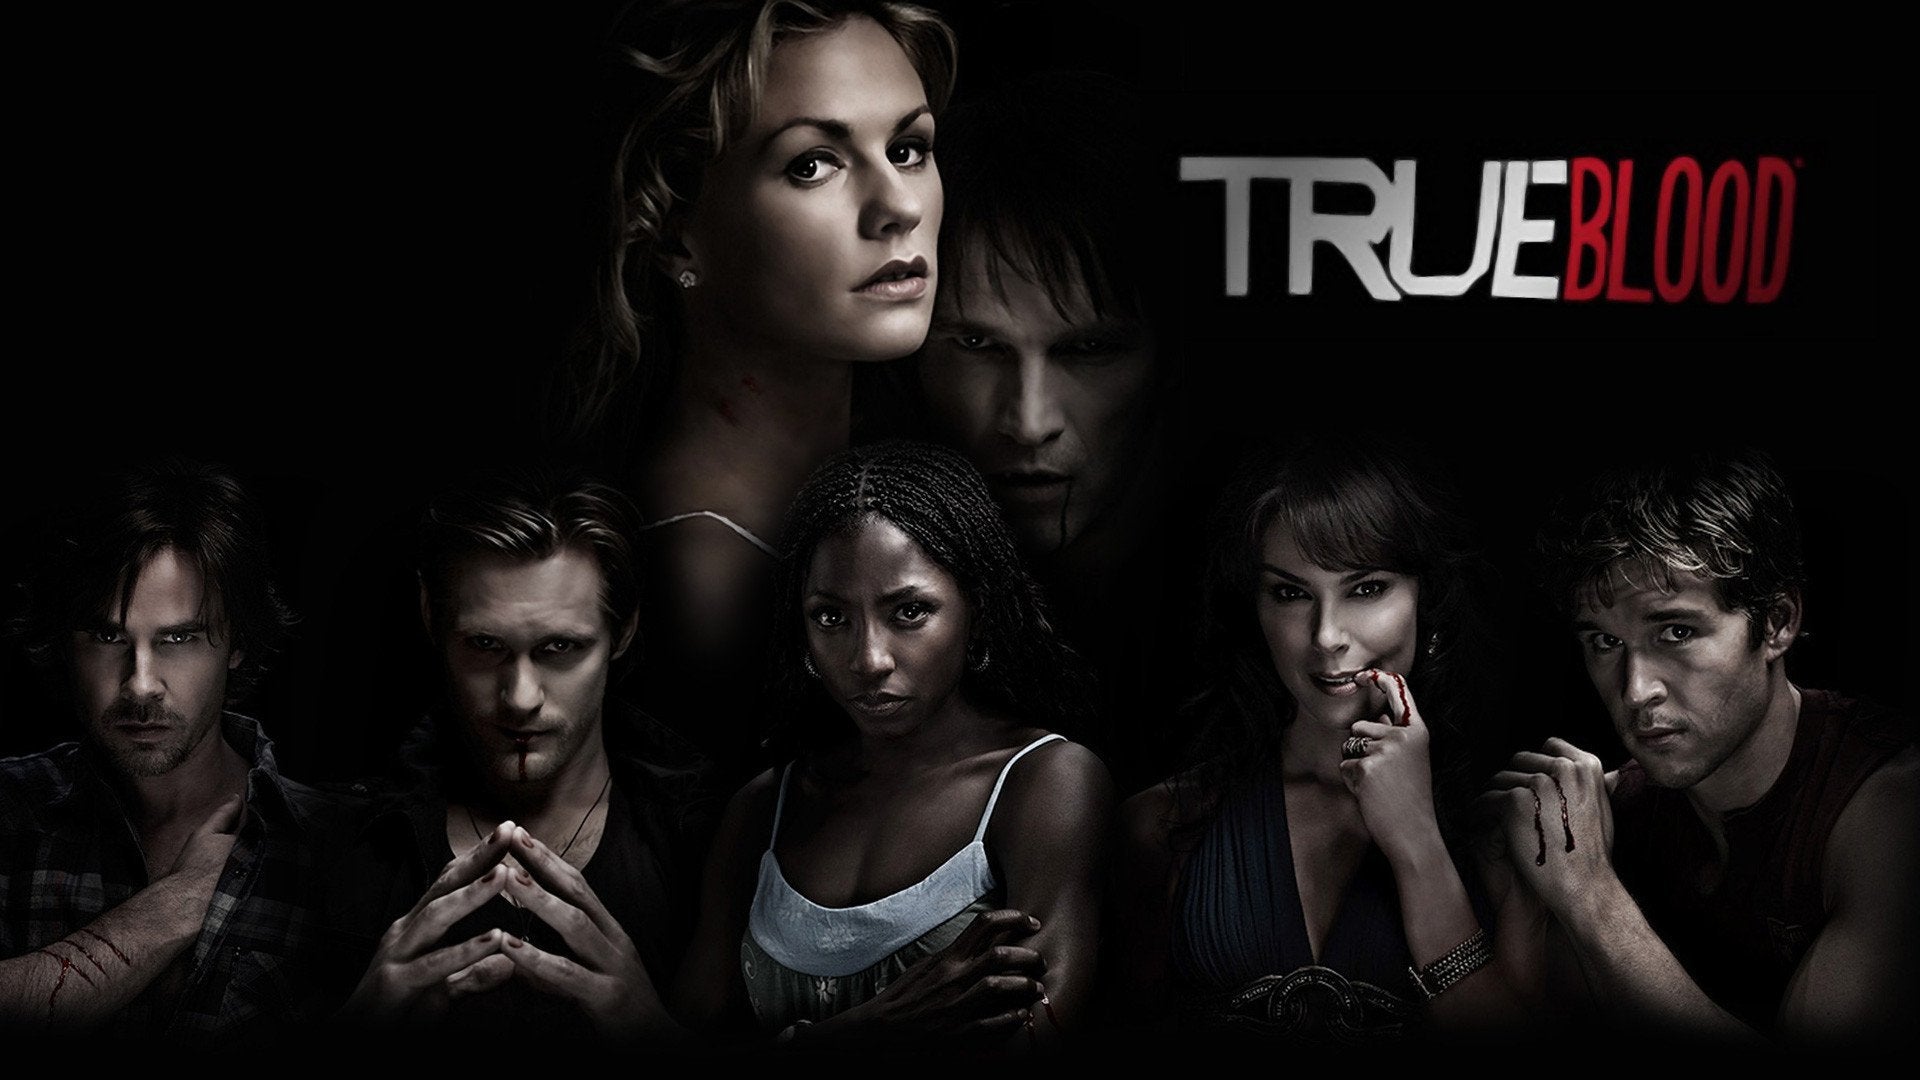 True Blood: The Complete Series - Seasons 1-7